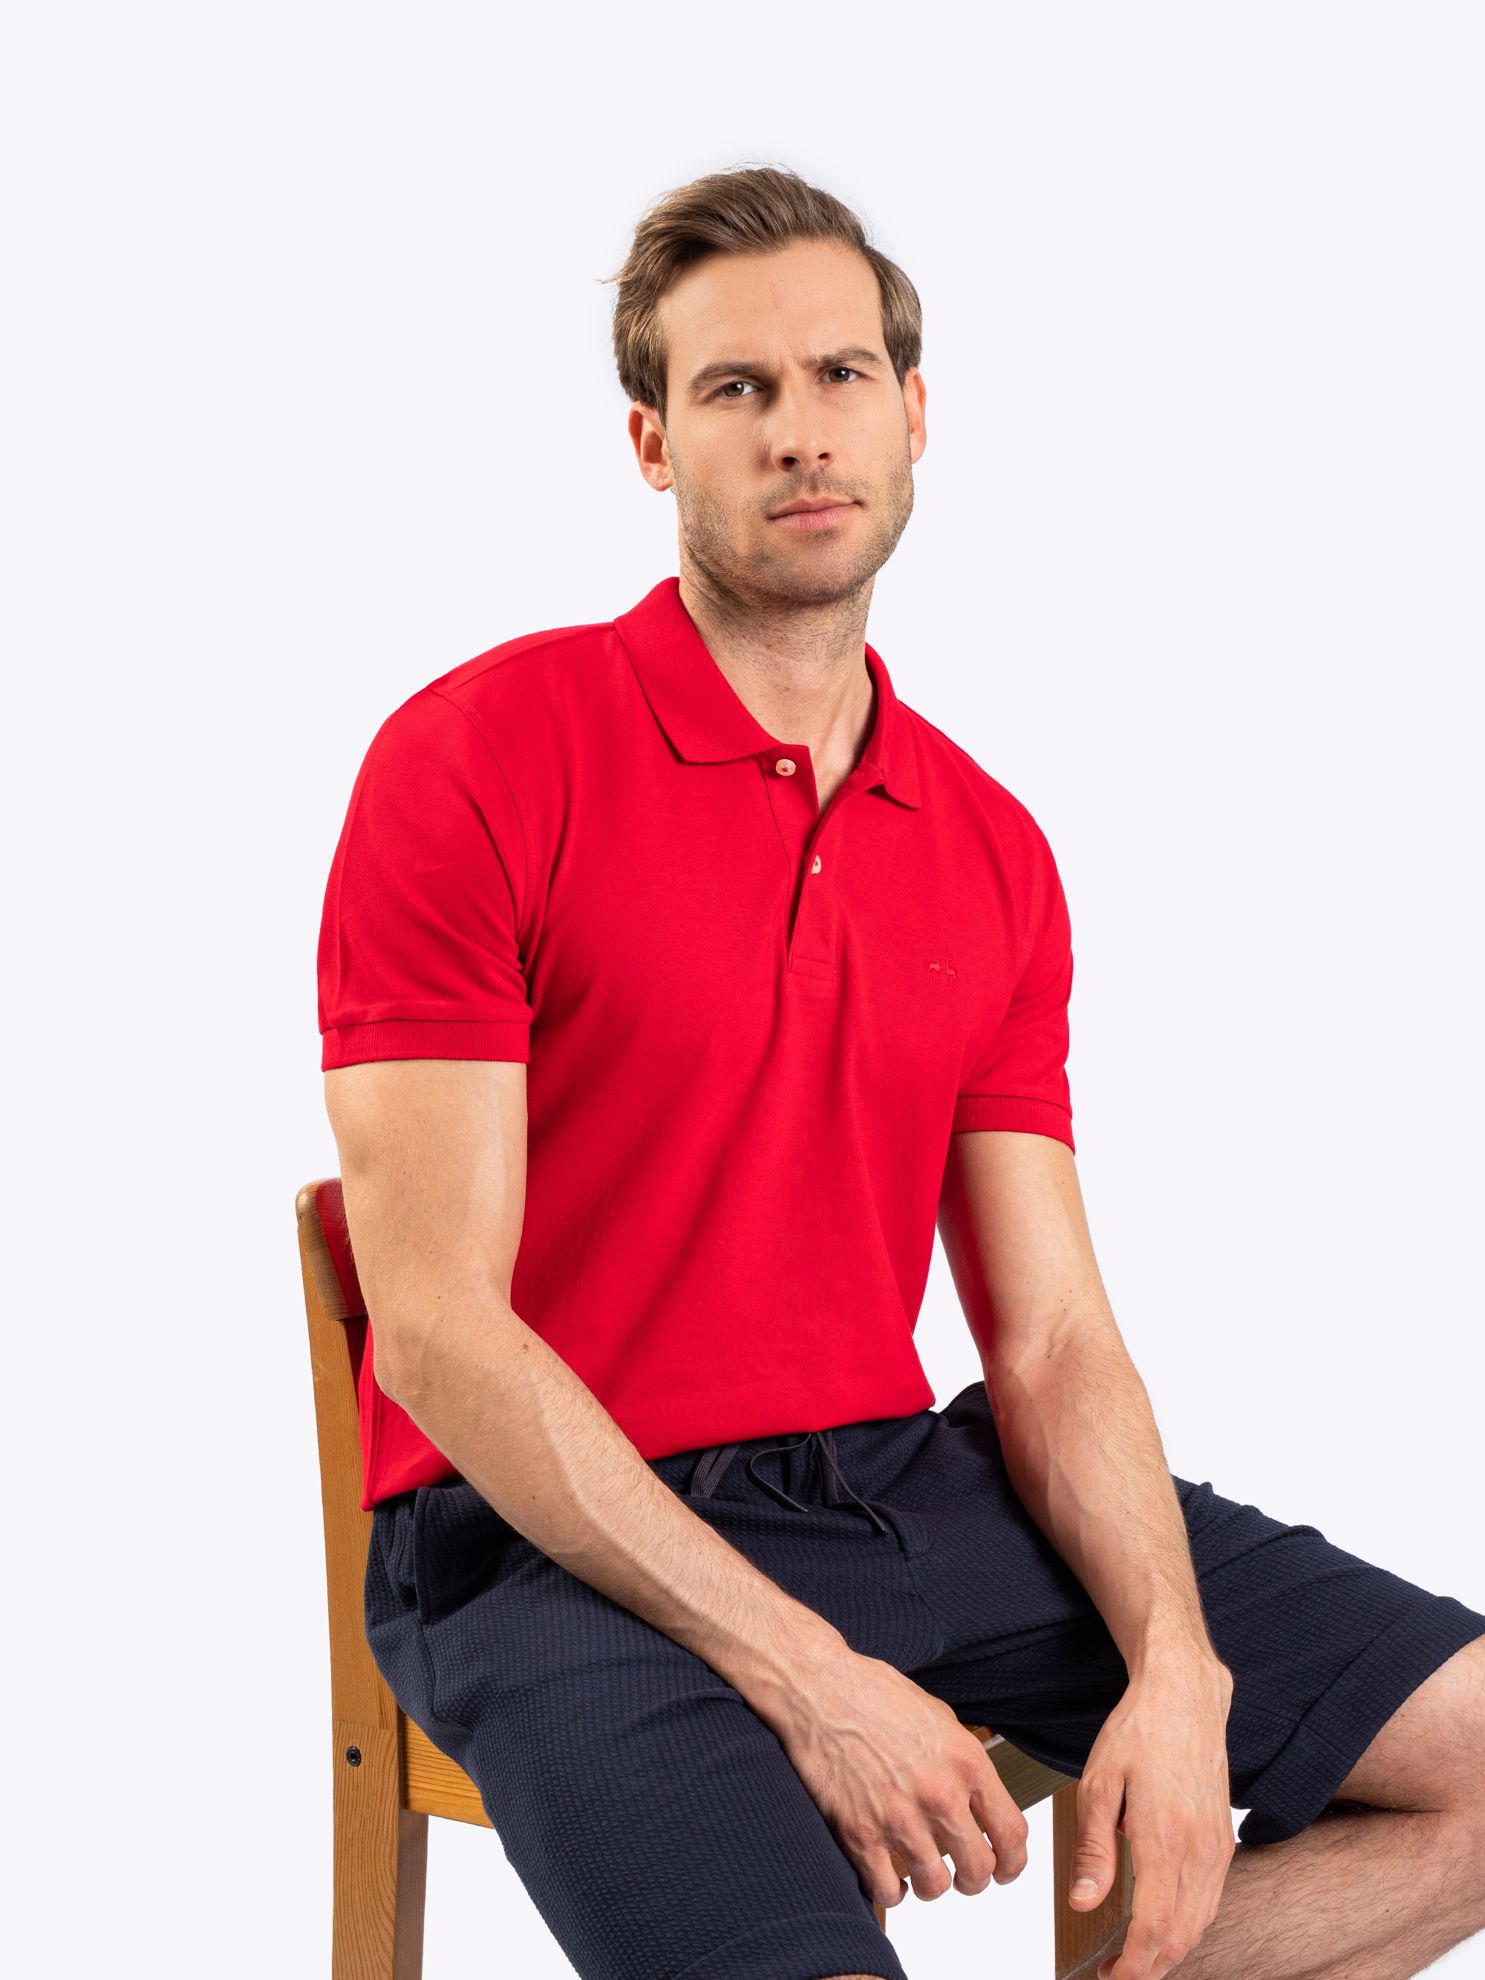 Karaca Erkek Slim Fit Polo Yaka Tişört-Kırmızı. ürün görseli